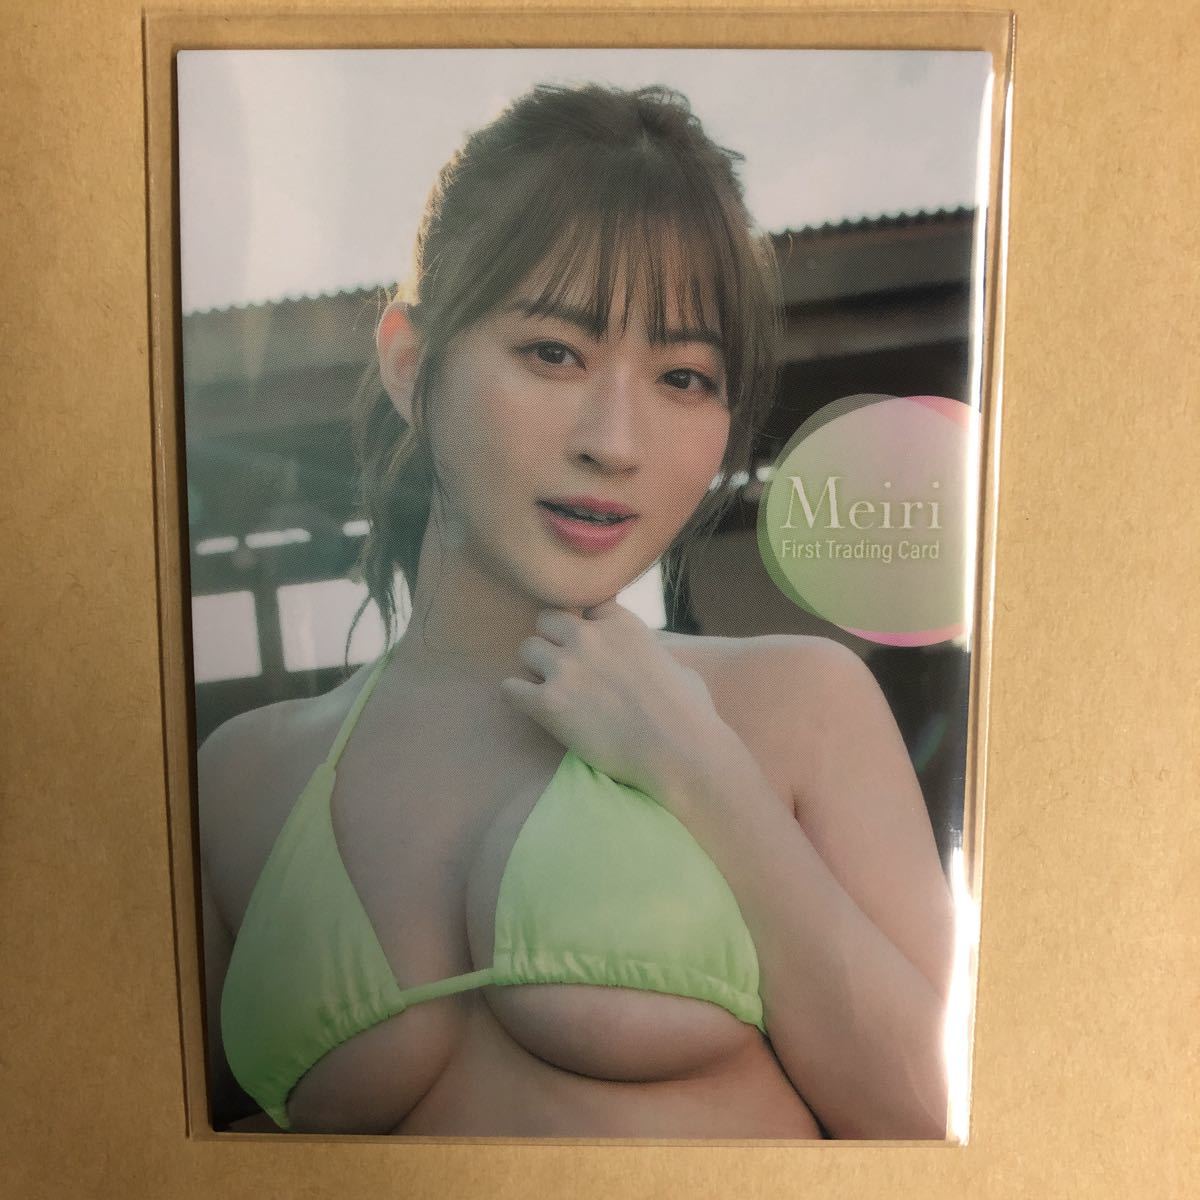 メイリ ヒッツ トレカ アイドル グラビア カード 水着 ビキニ RG54 タレント ファーストトレーディングカード 水沢めいの画像2